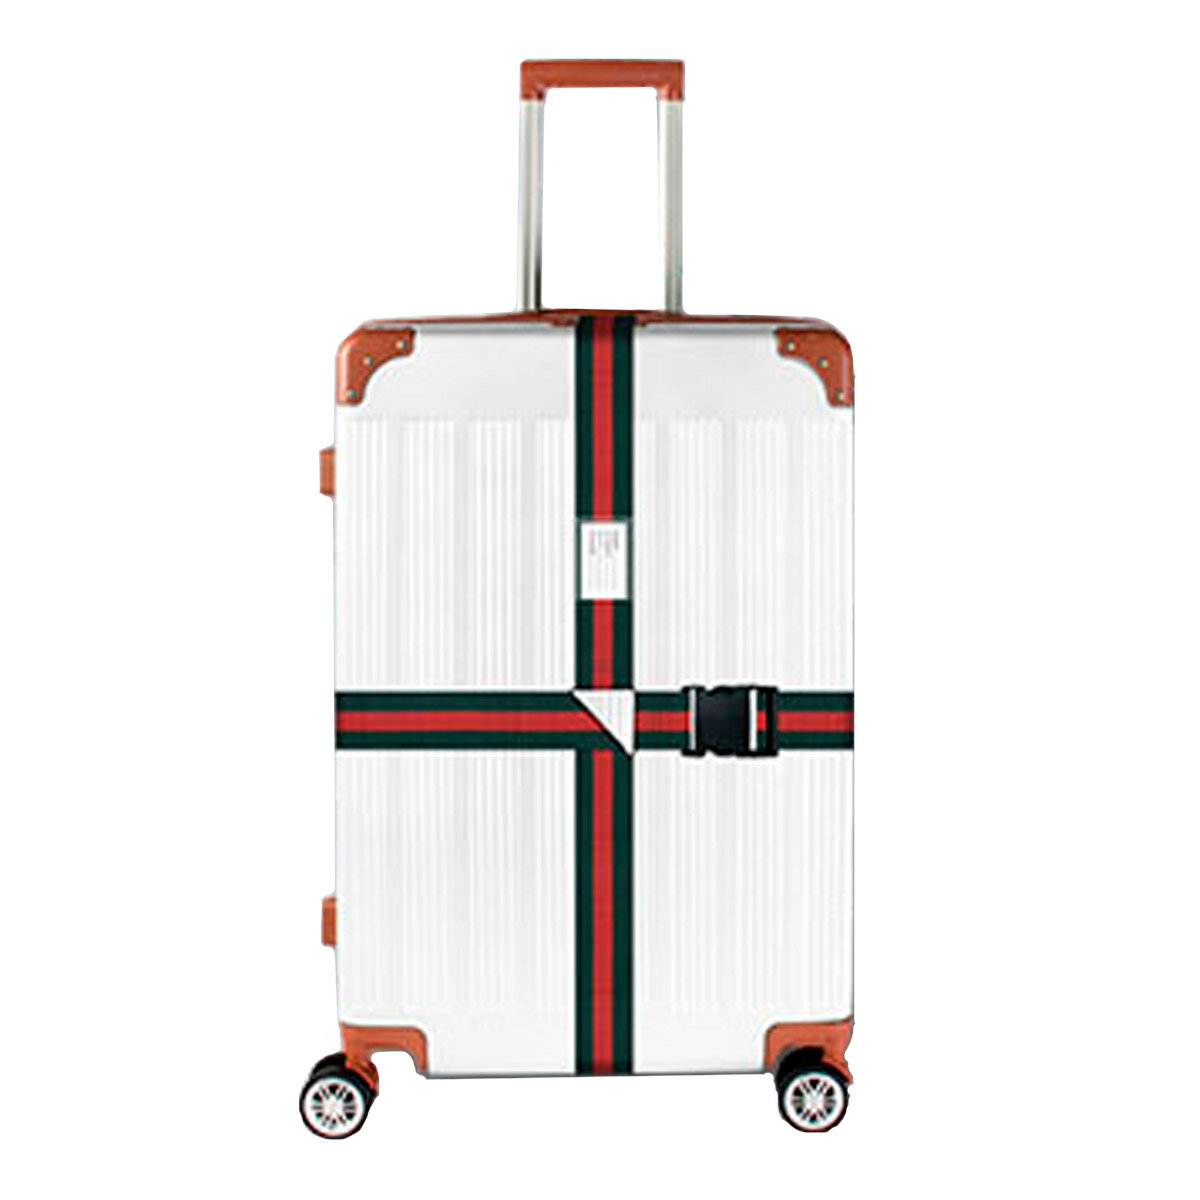 Ремень для чемодана для багажа багажный ремень стяжка багажа и крепления груза оранжевый